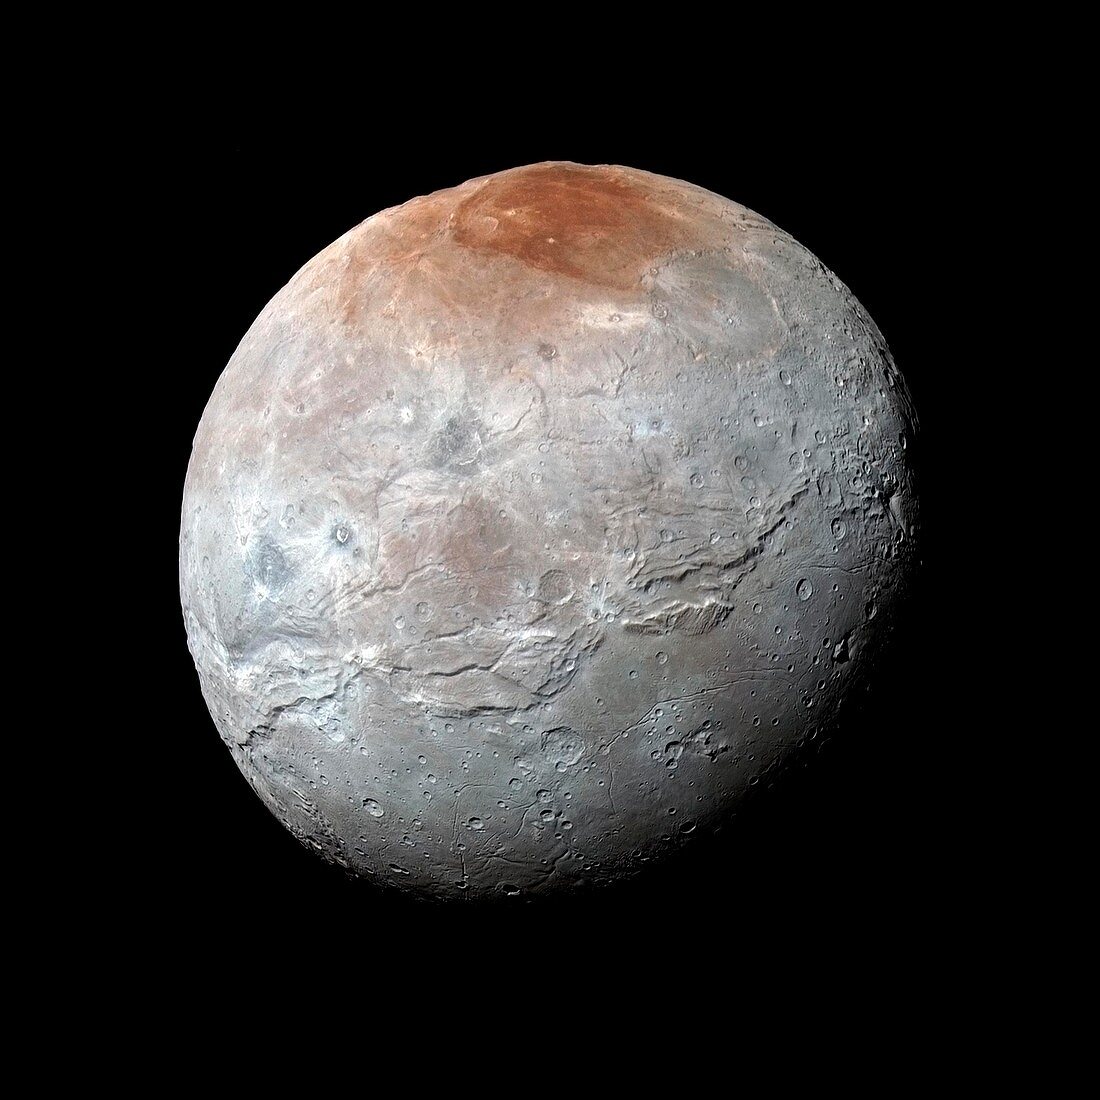 Charon,New Horizons image